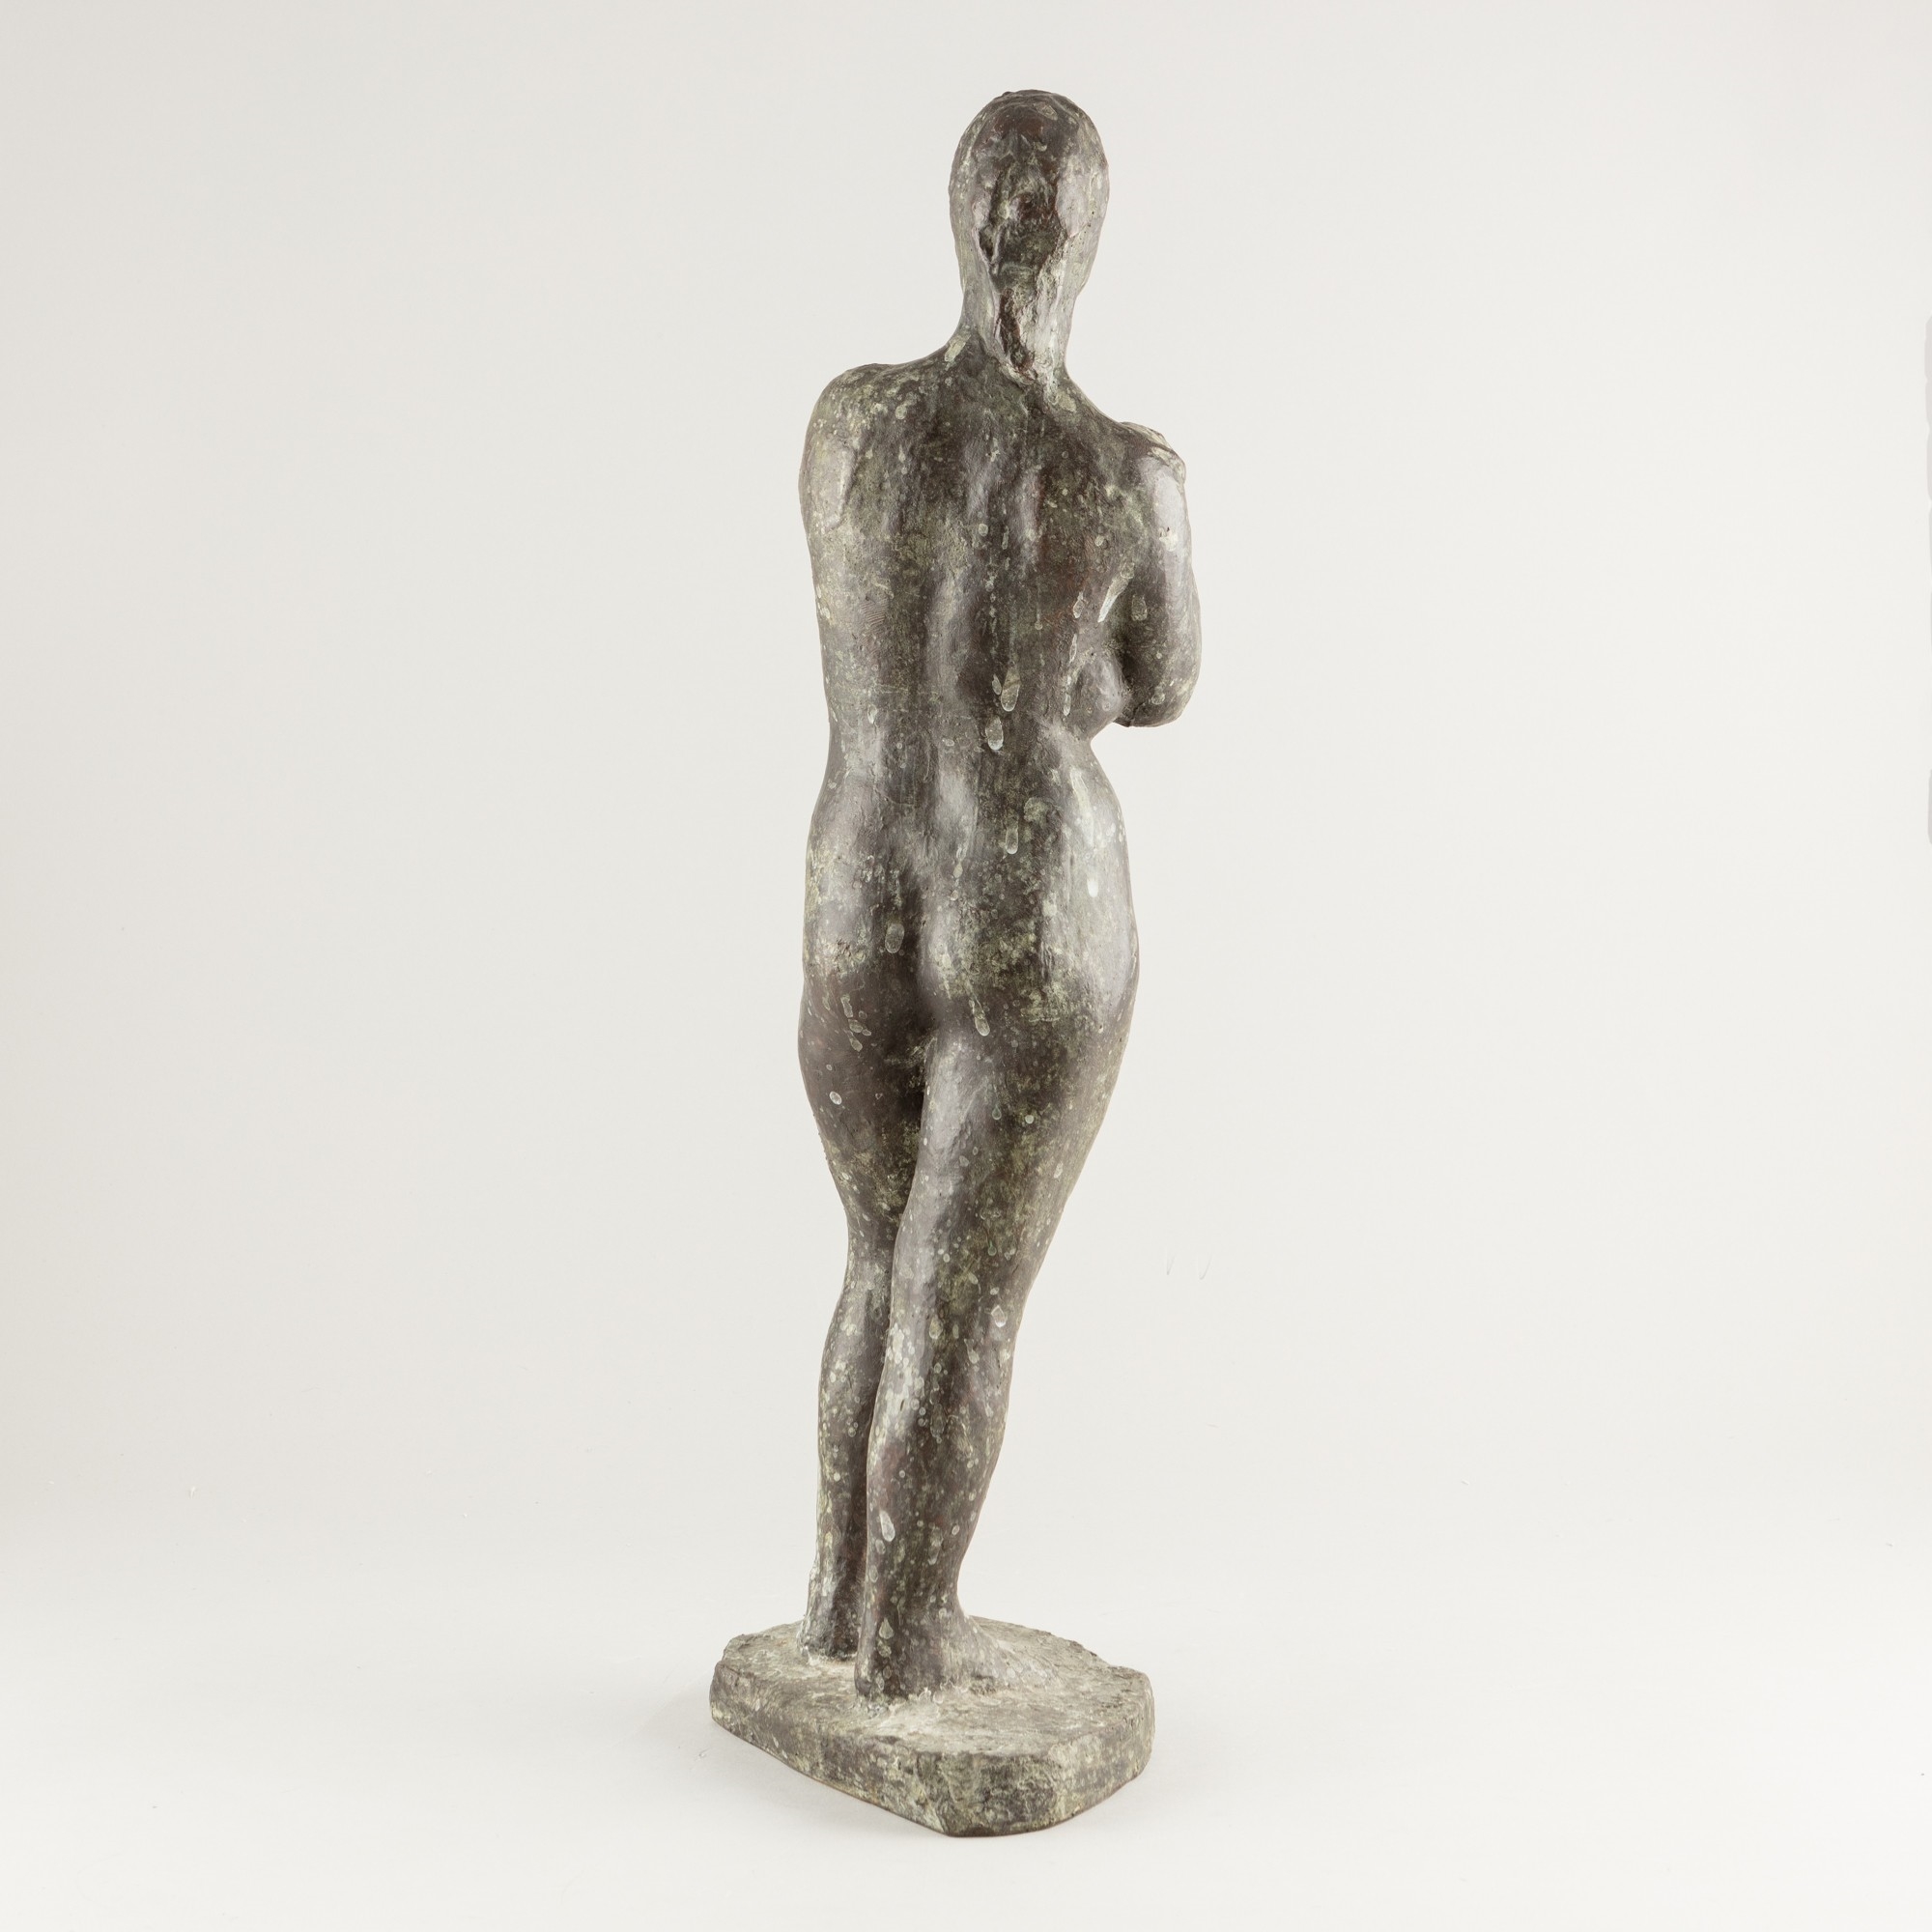 Artwork by Kerttu Leppänen, Nude model, Made of bronze